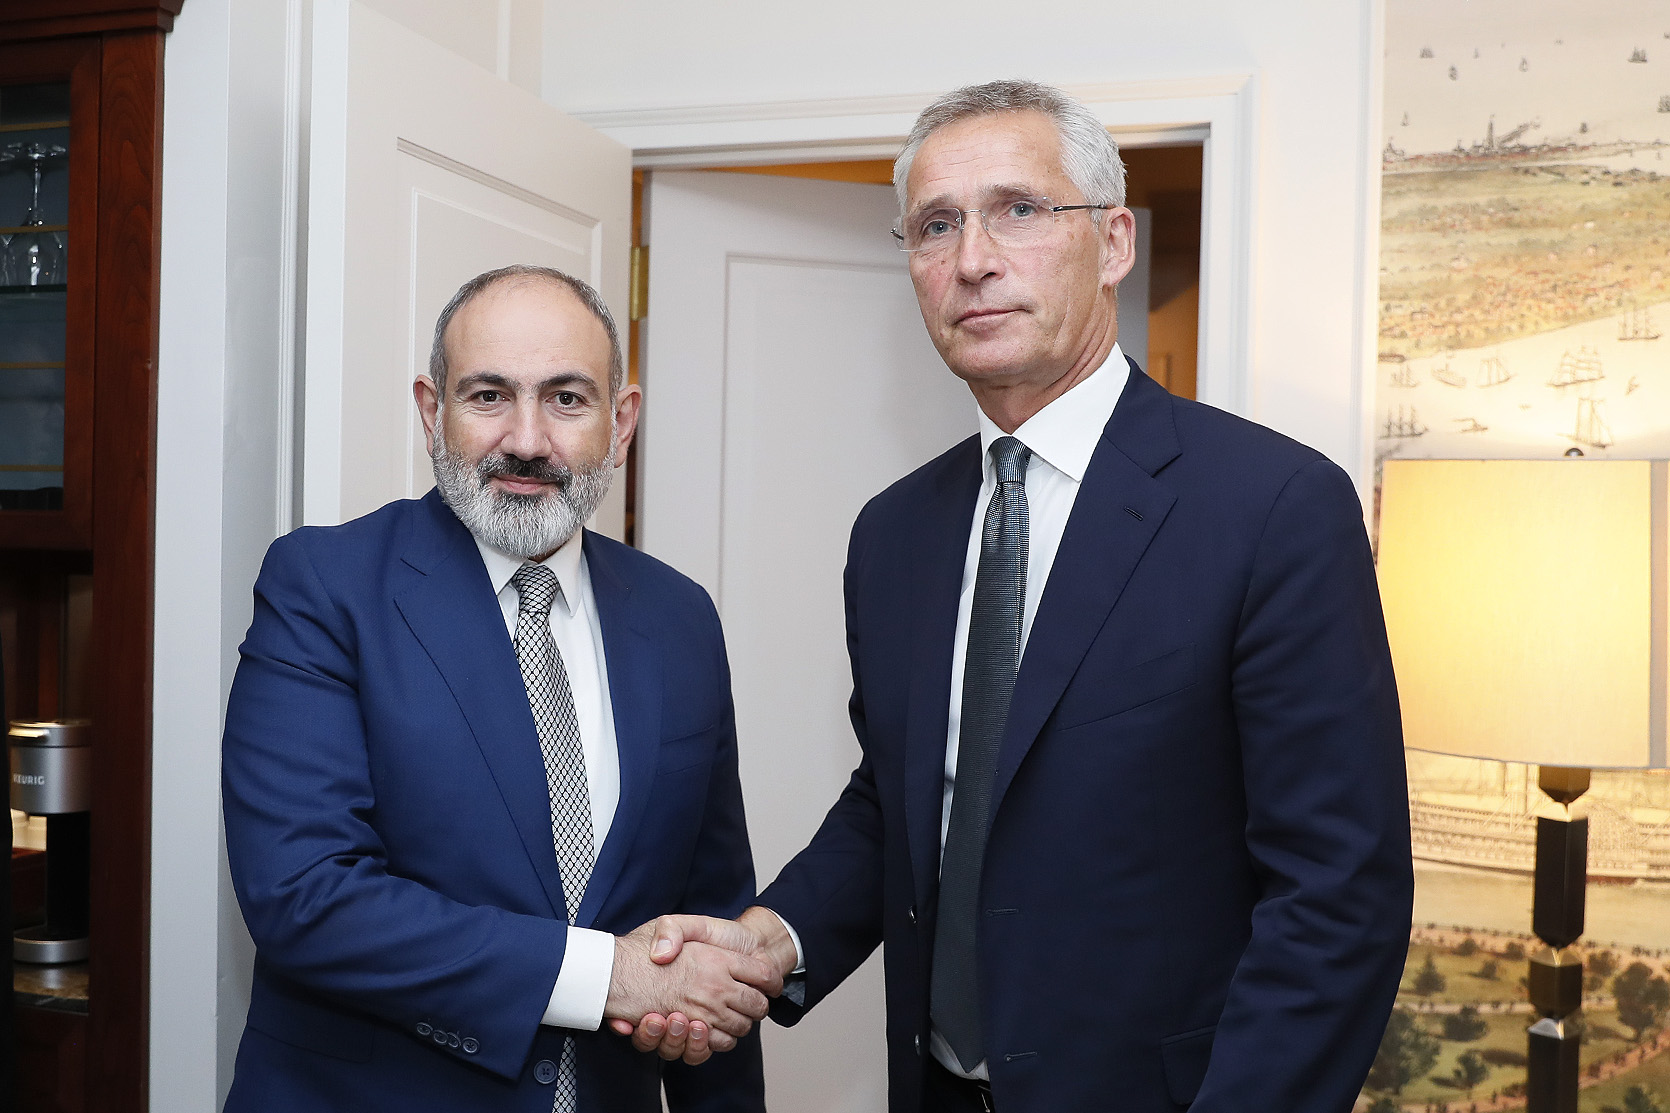 ՆԱՏՕ-ի գլխավոր քարտուղարը ՀՀ վարչապետի հետ հանդիպմանը նշել է, որ չափազանց մտահոգված է հայ-ադրբեջանական սահմանին տեղի ունեցած դեպքերի առնչությամբ